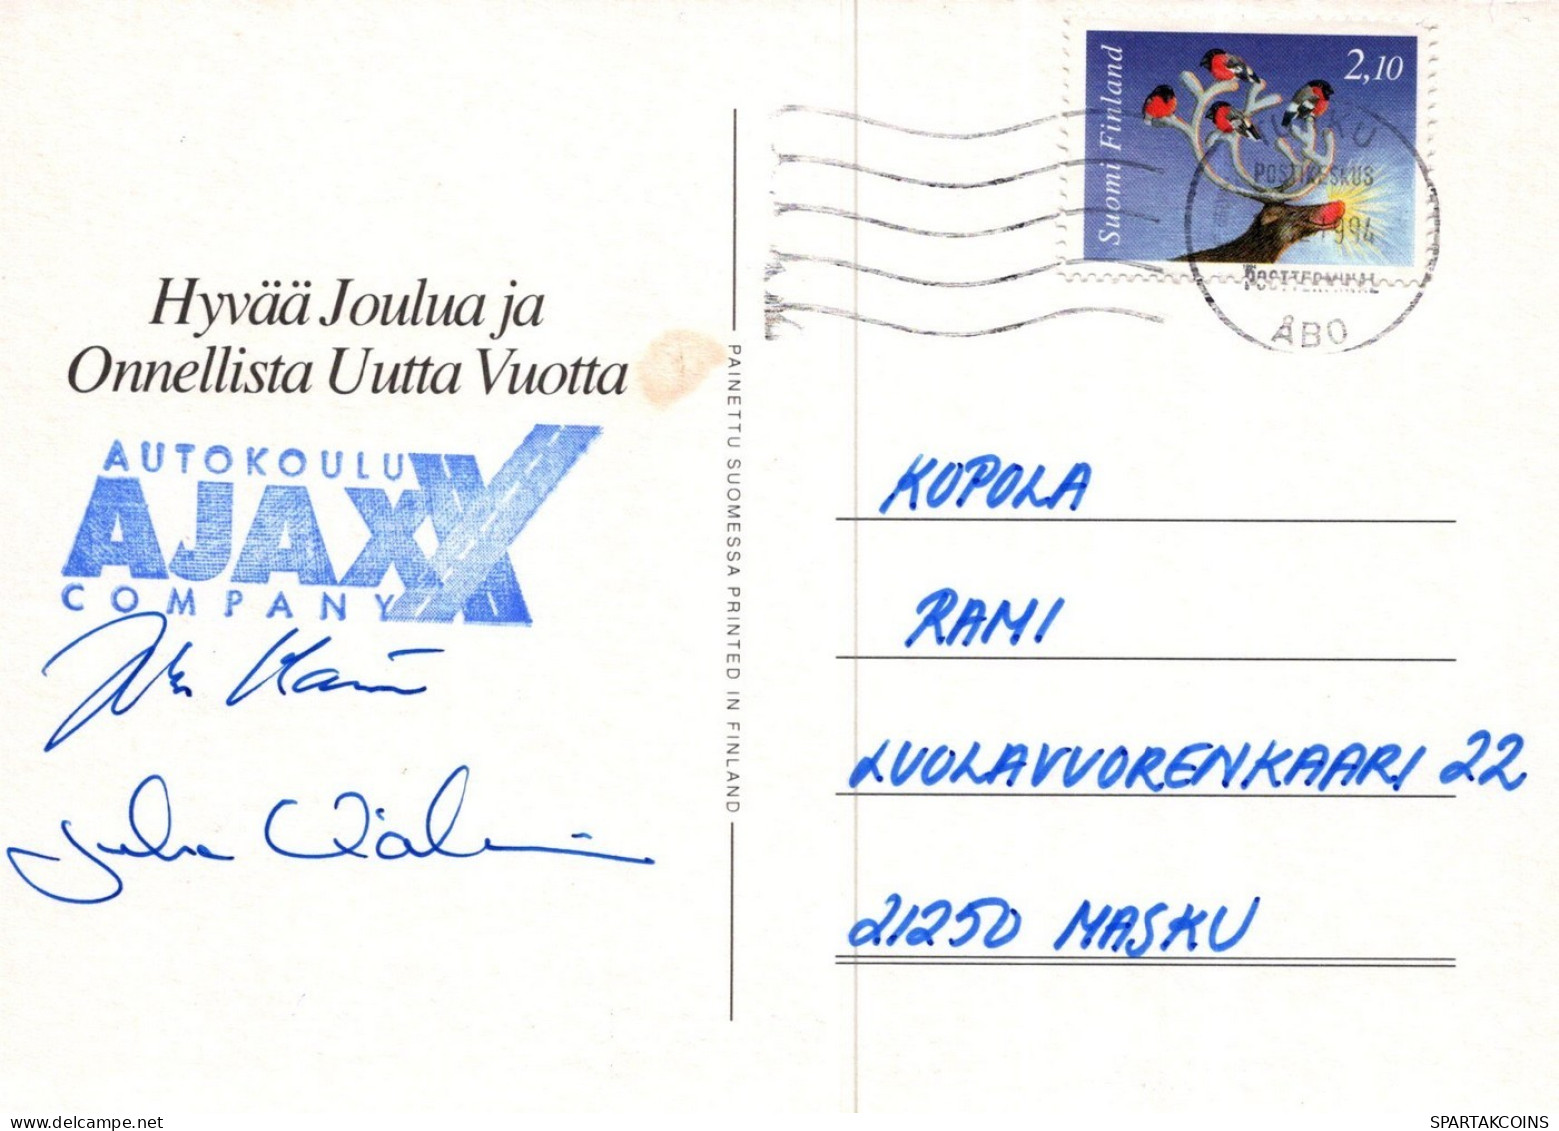 PÈRE NOËL NOËL Fêtes Voeux Vintage Carte Postale CPSM #PAK601.FR - Santa Claus